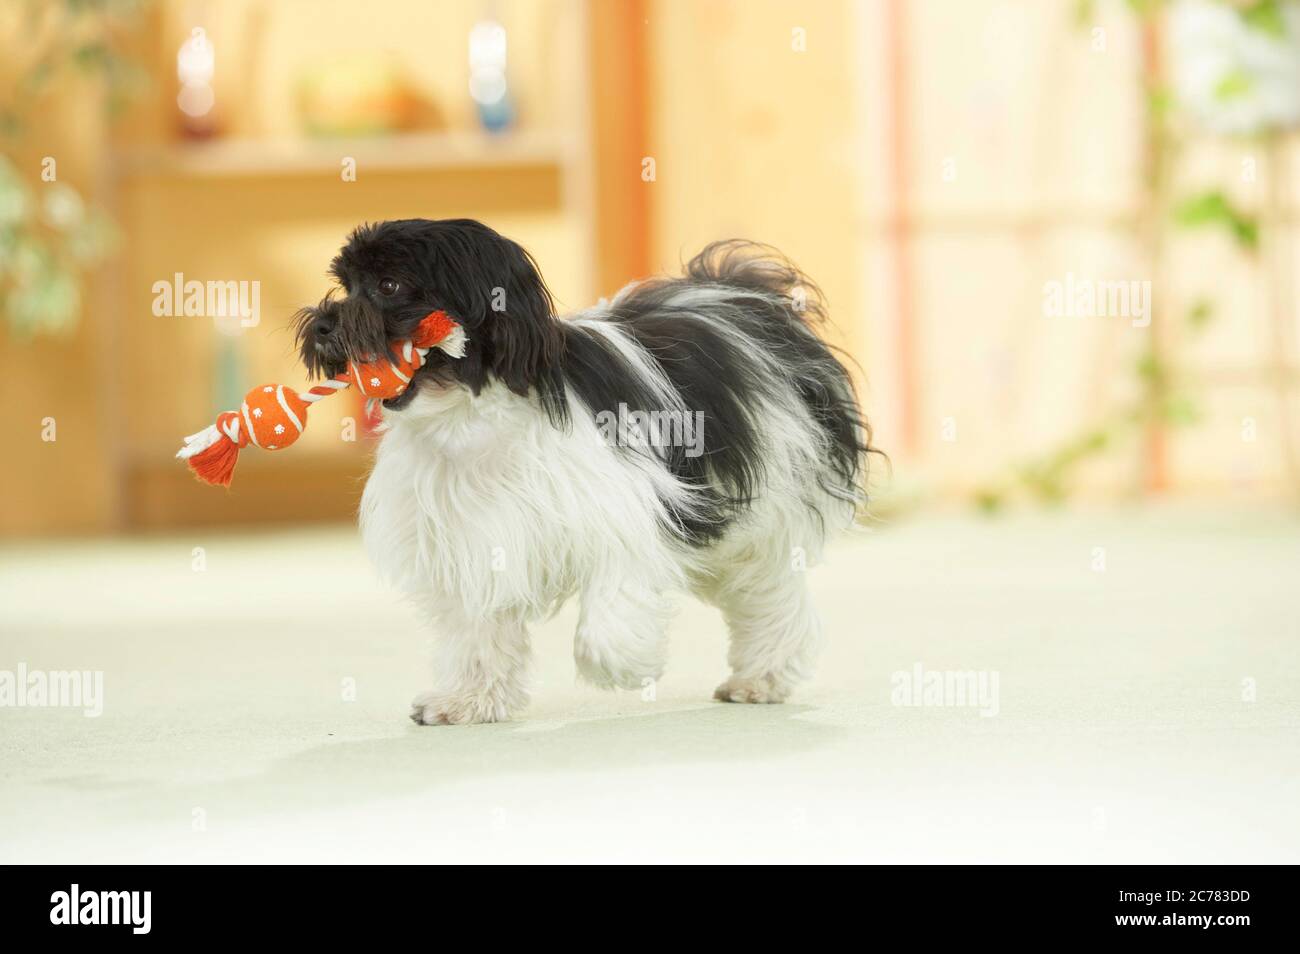 Bichons Havanais. Un chien adulte joue avec un jouet dans un appartement. Allemagne Banque D'Images